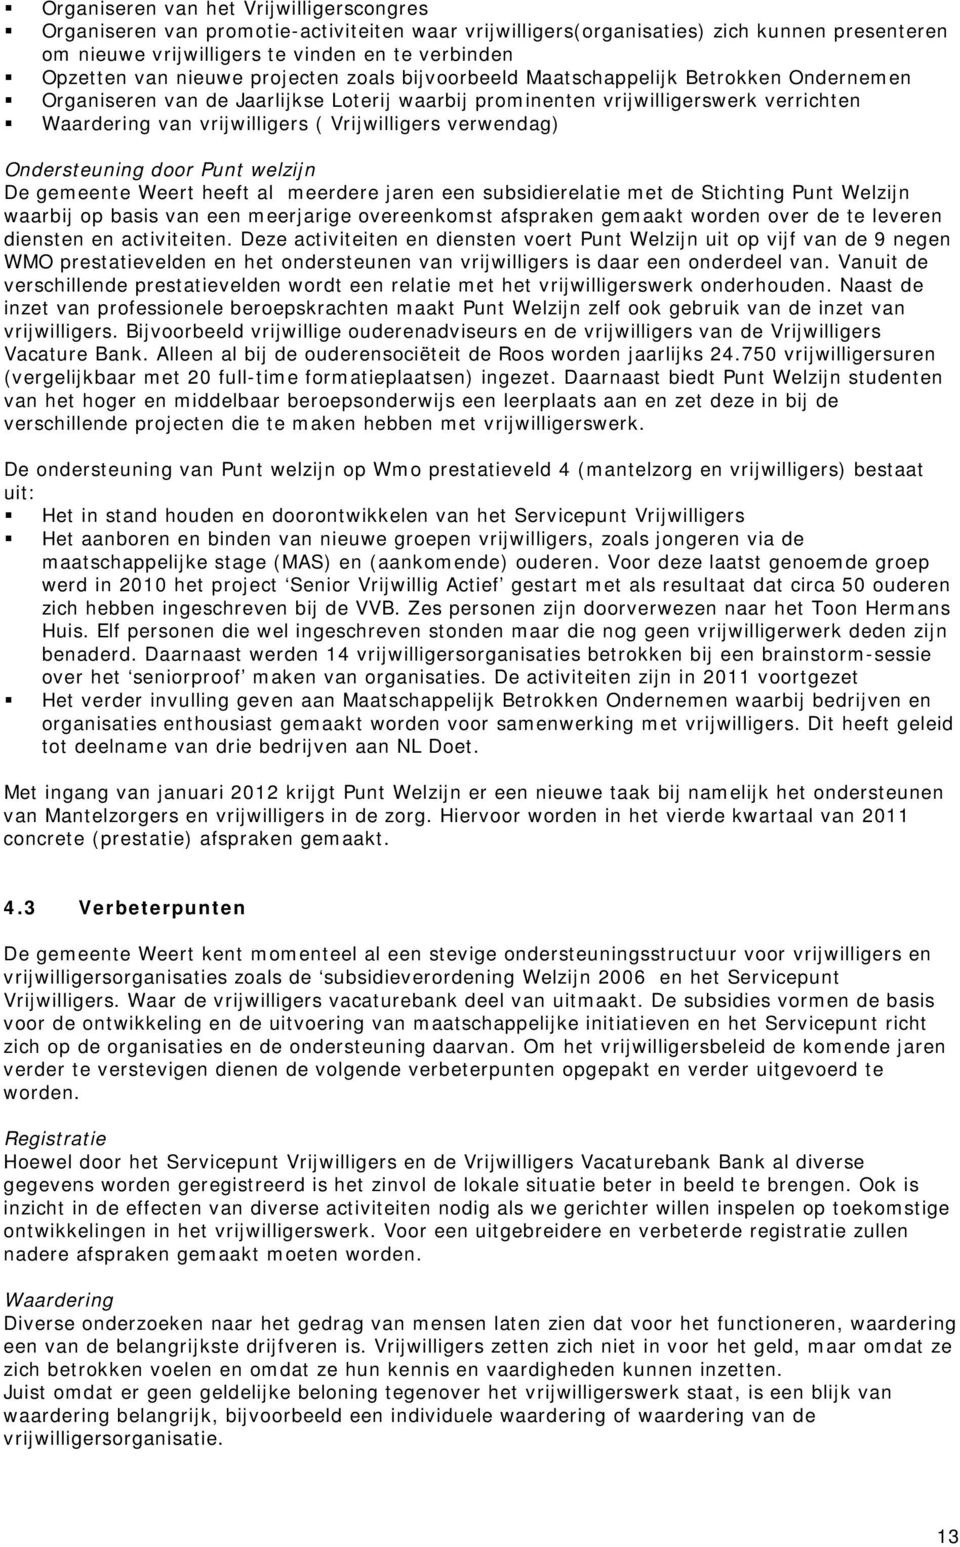 Vrijwilligers verwendag) Ondersteuning door Punt welzijn De gemeente Weert heeft al meerdere jaren een subsidierelatie met de Stichting Punt Welzijn waarbij op basis van een meerjarige overeenkomst